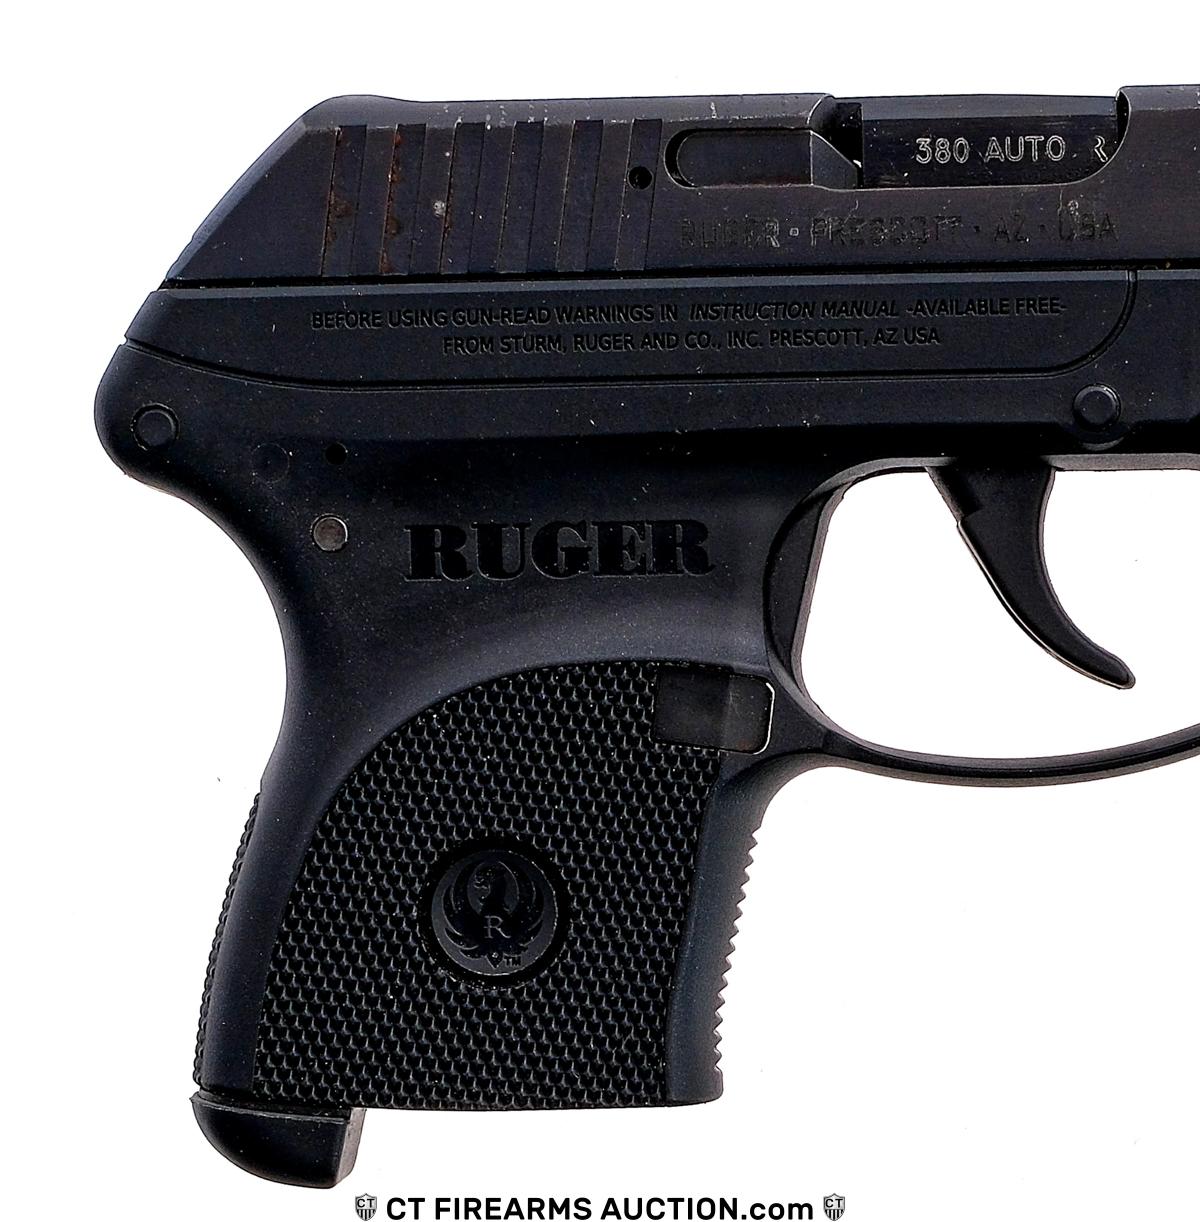 Ruger LCP .380 Auto Semi Auto Pistol